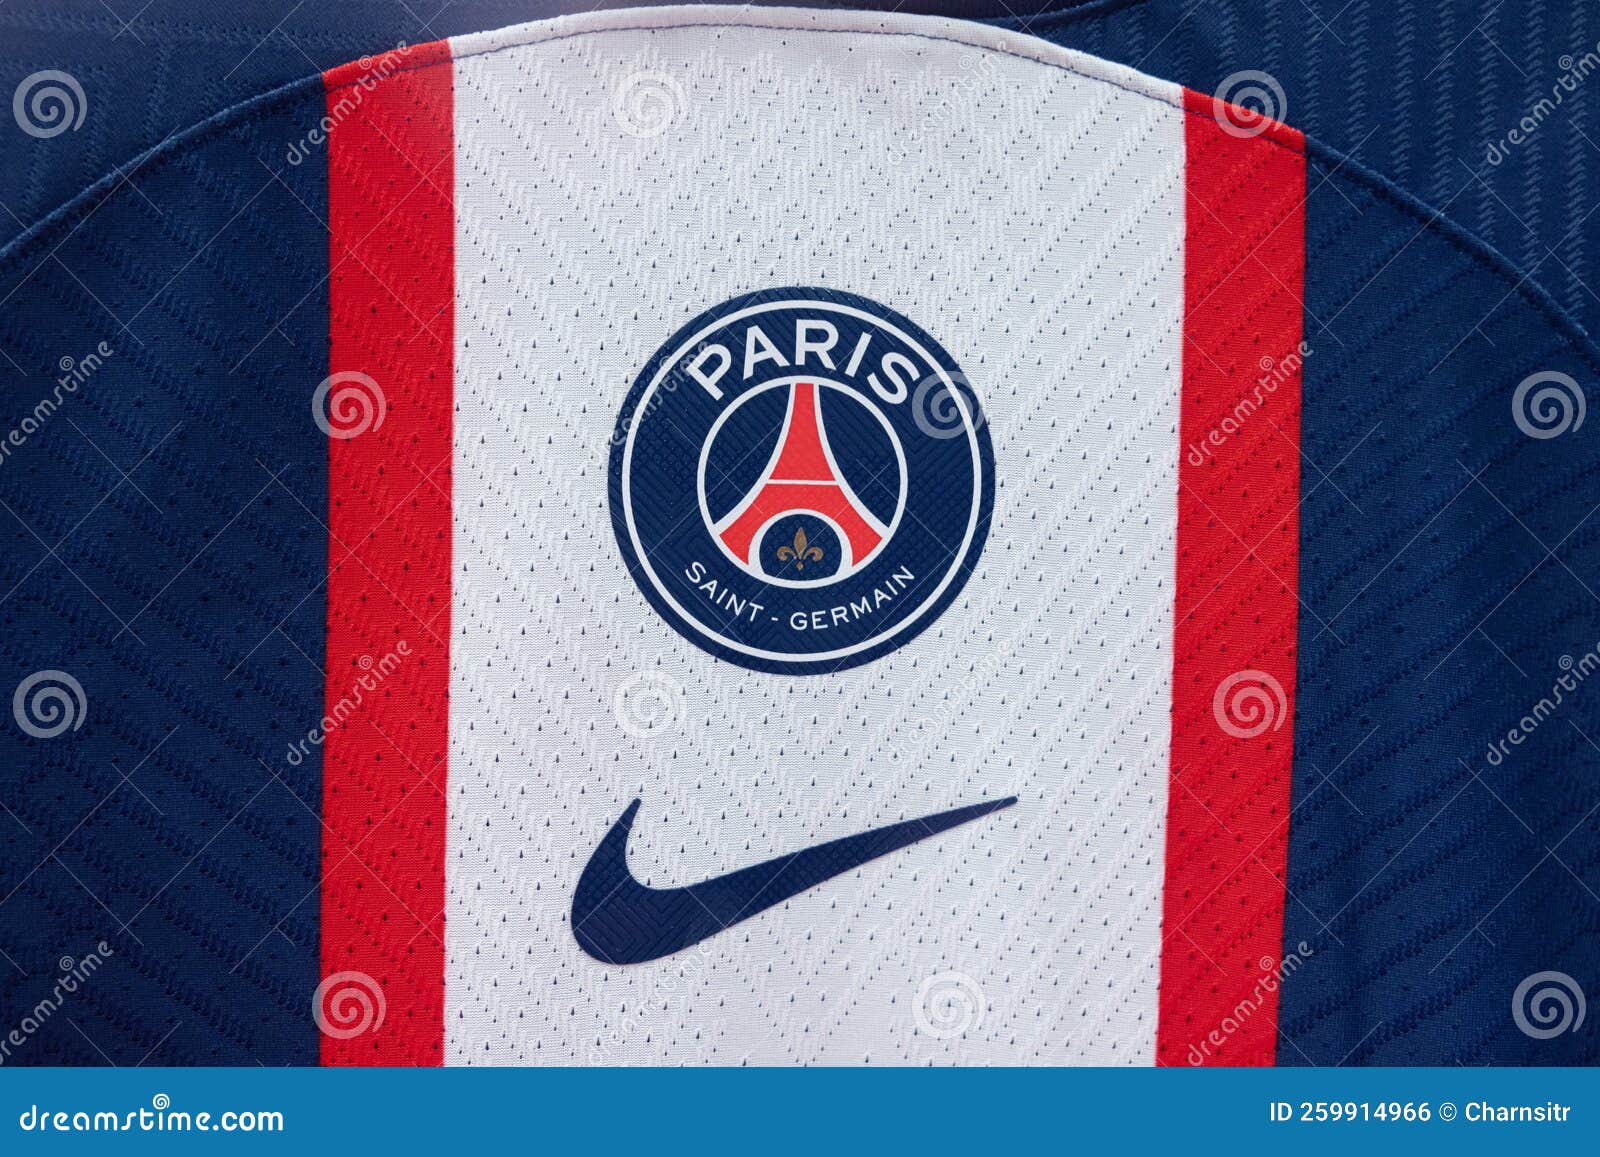 Photo de stock Club de football Paris Saint-Germain. Le 1226244358